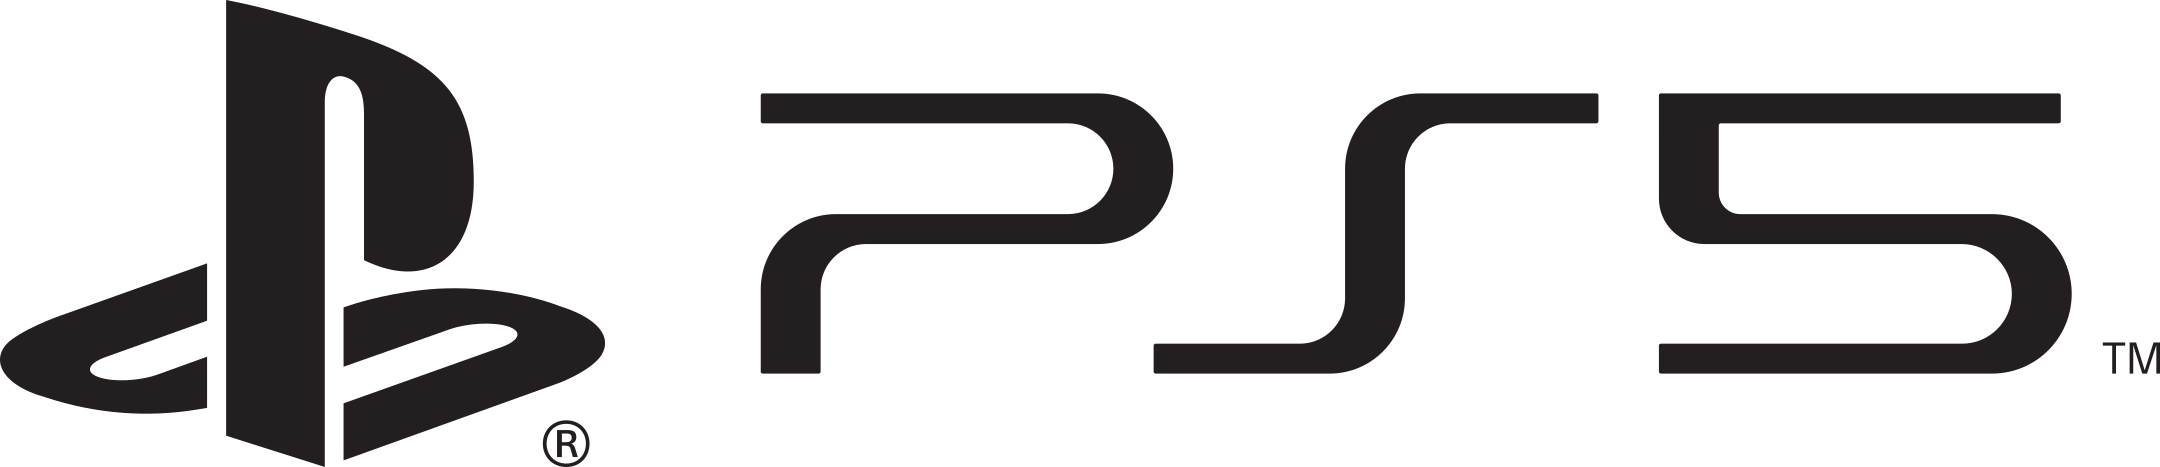 ps5 playstation 5 logo 1 - PS5 Logo – PlayStation 5 Logo